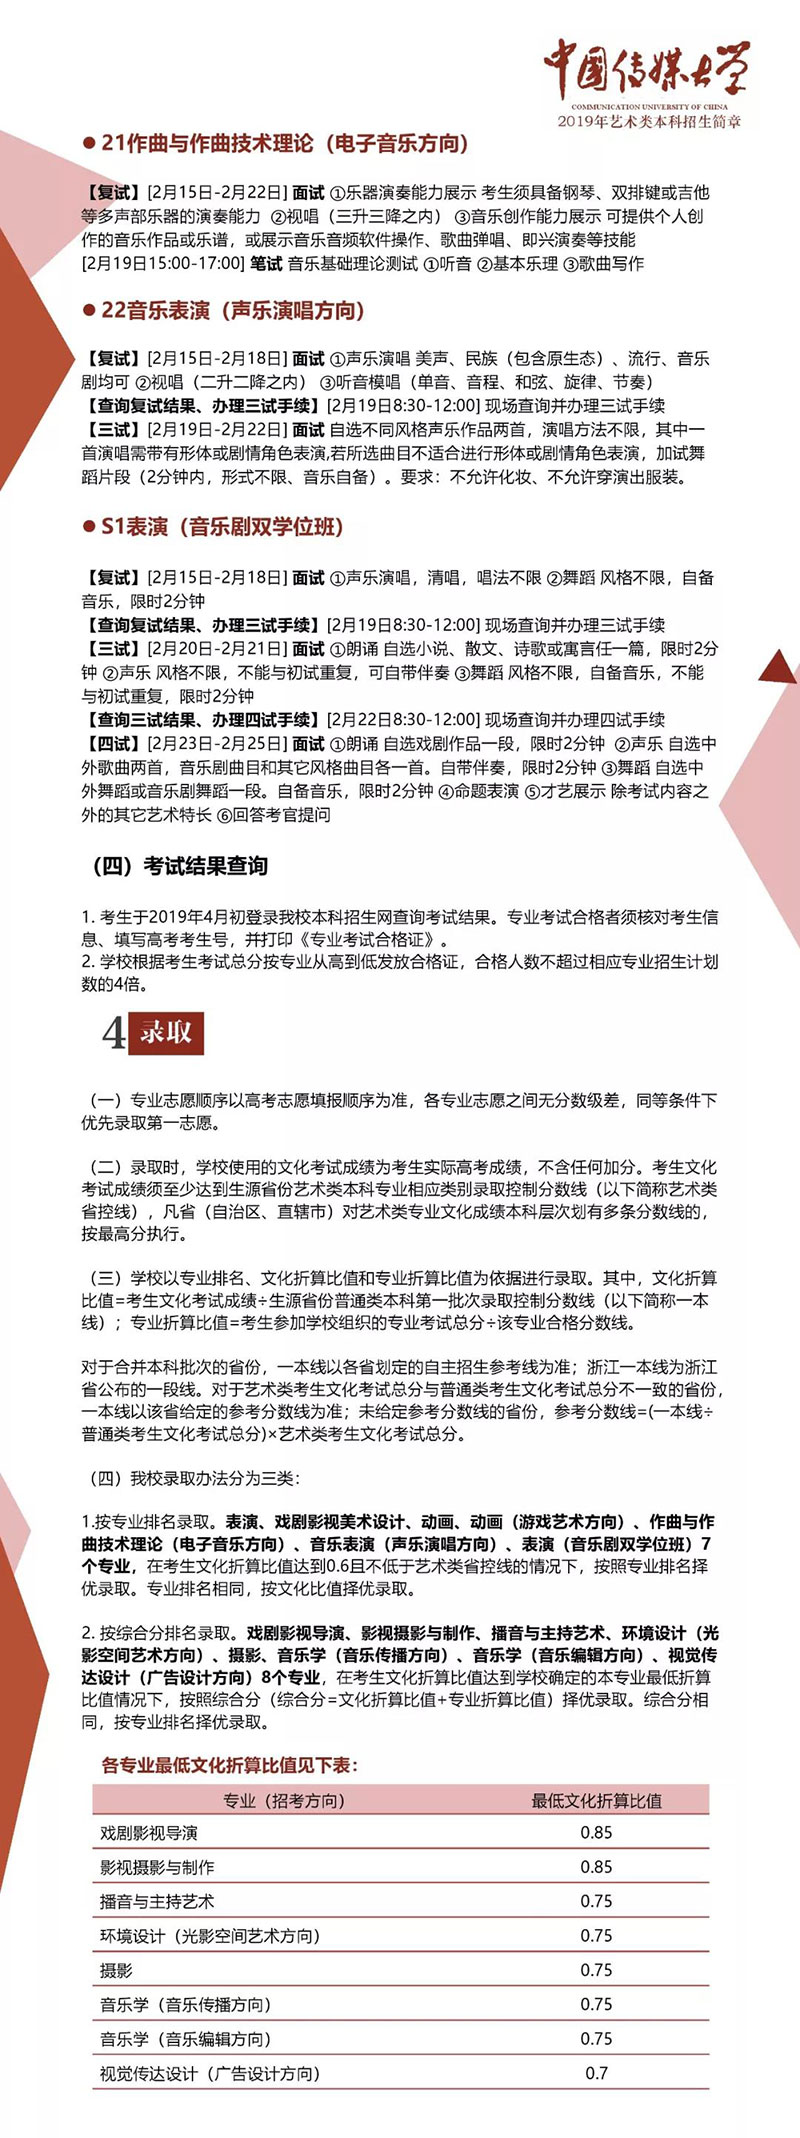 中国传媒大学艺术考试复试条件